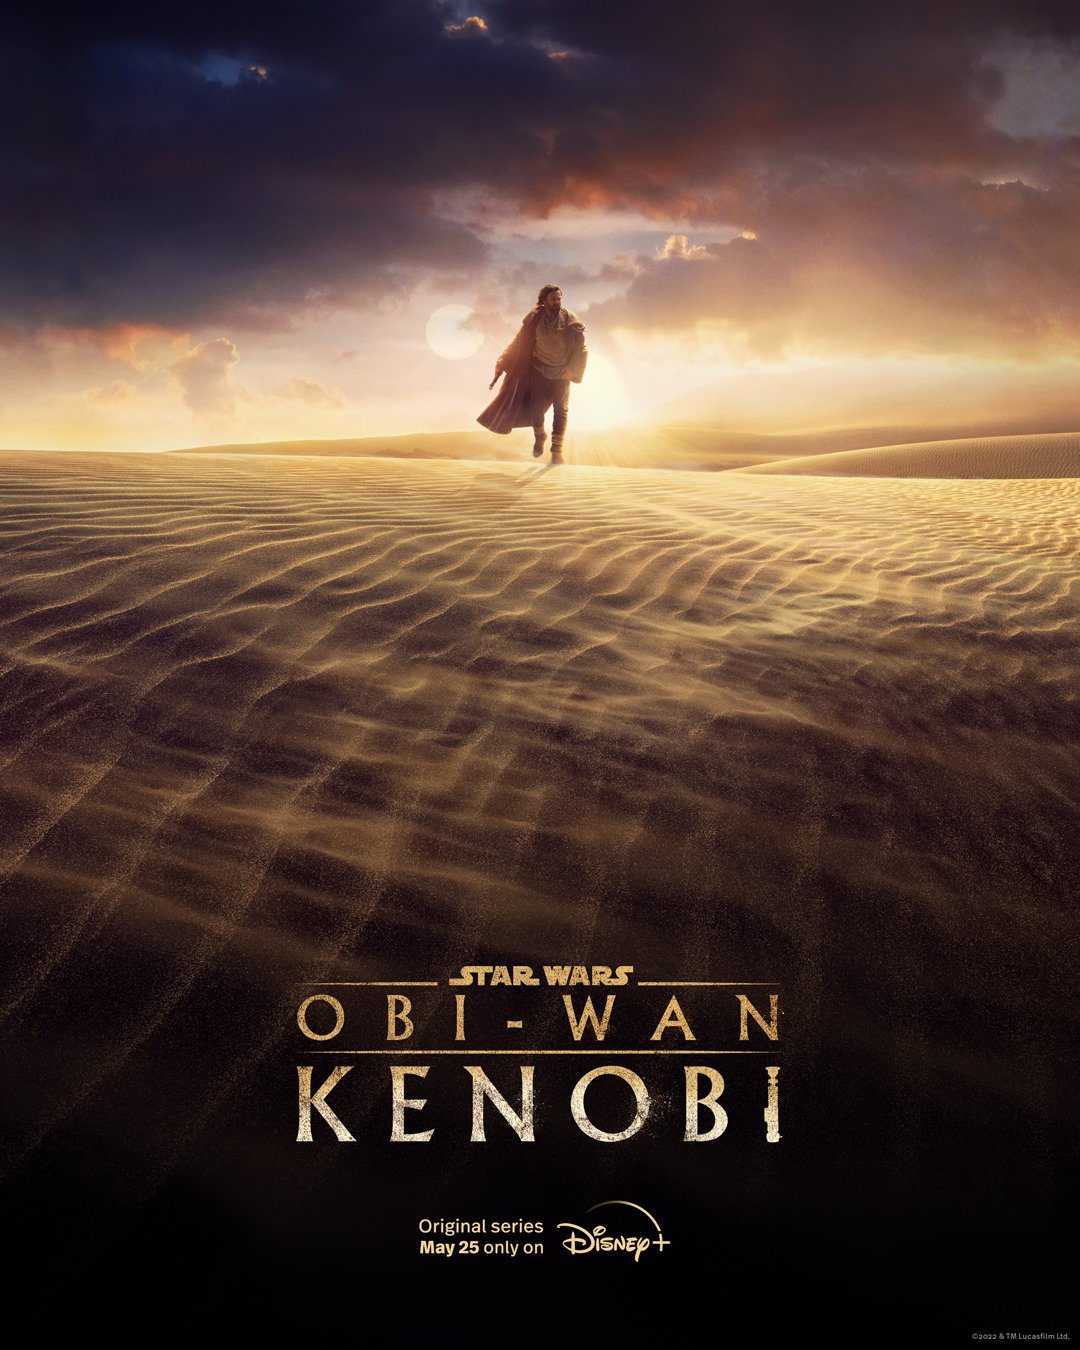 Star Wars Obi-Wan Kenobi | John Williams retorna para criar tema da série com Ewan McGregor